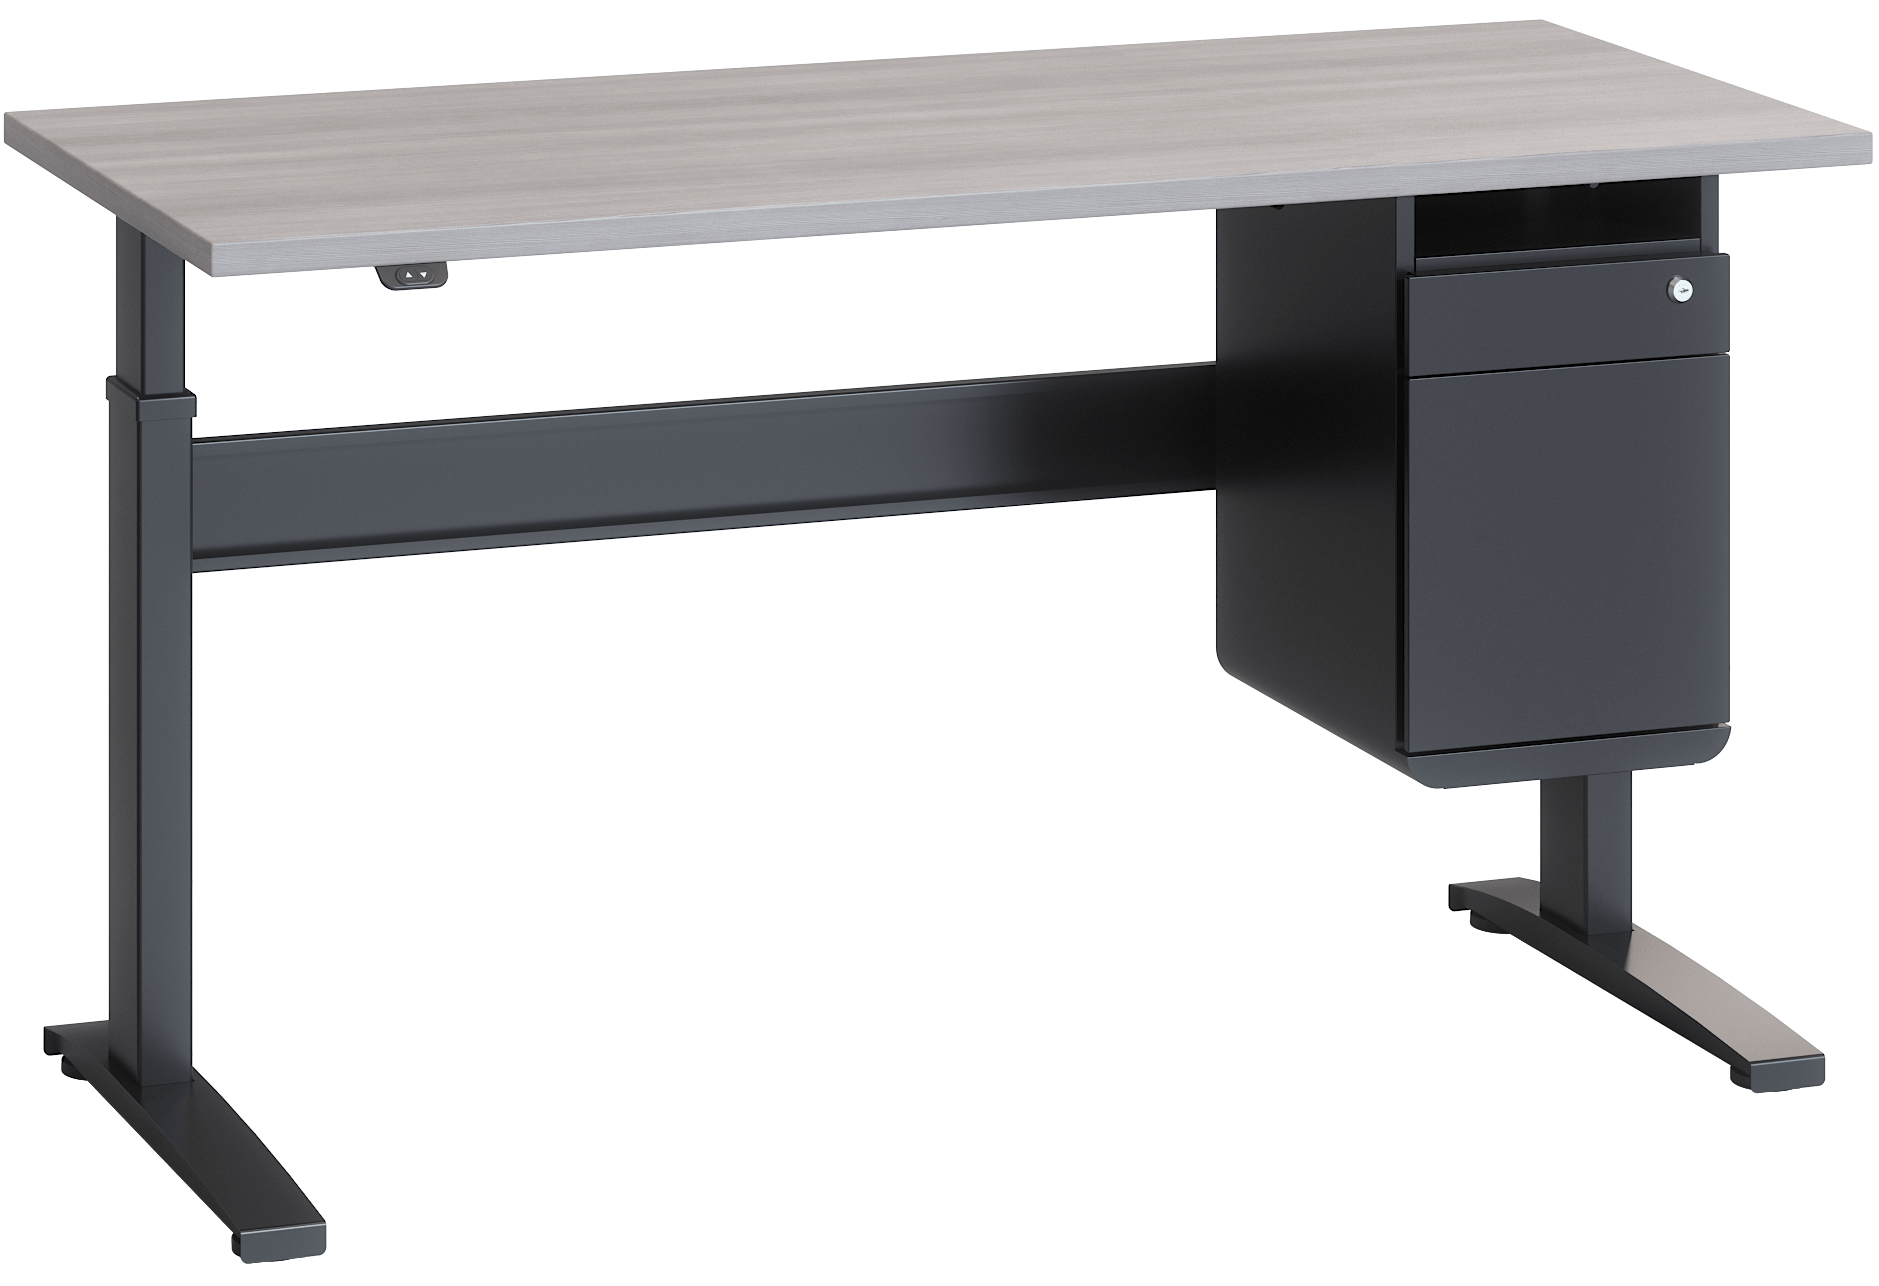 Joey 2.0 desk mounted laminate front pedestal installed on Bonita ET sit-stand desk